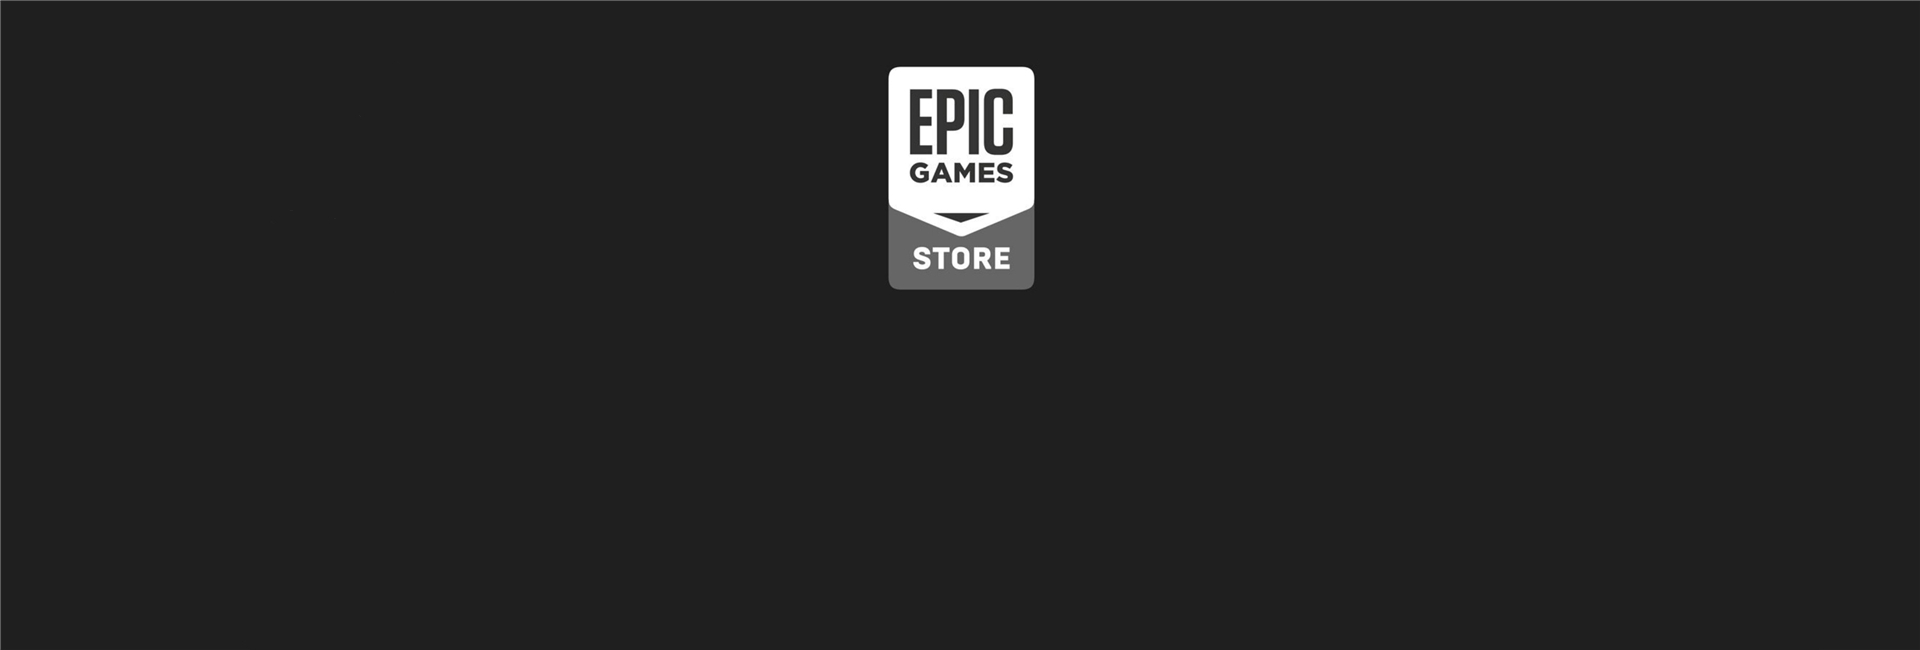 EPIC喜加一游戏资讯合集